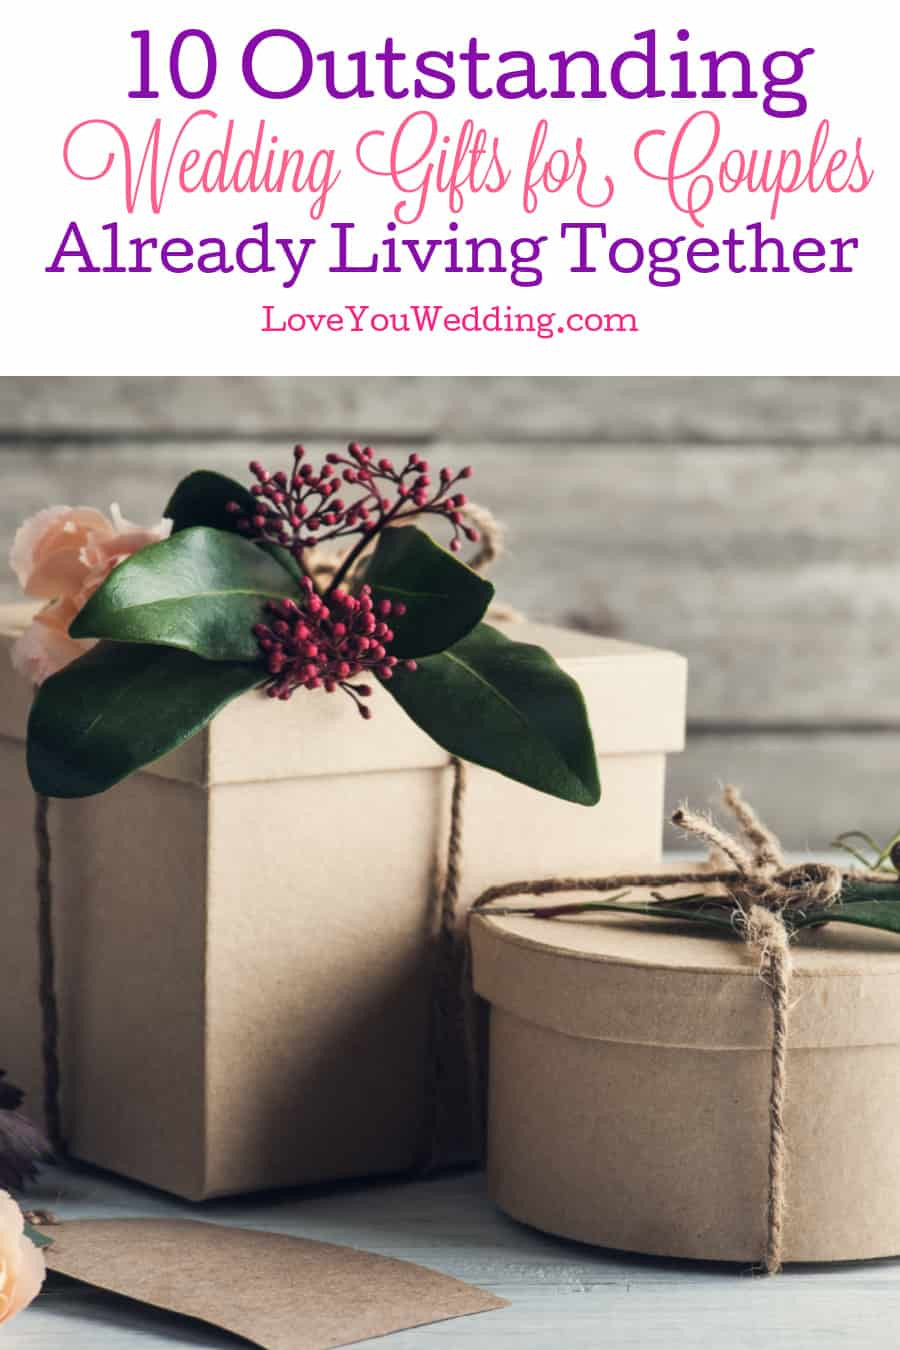 Wedding Gift Ideas For Couple Already Living Together
 10 Outstanding Wedding Gift Ideas for Couples Already